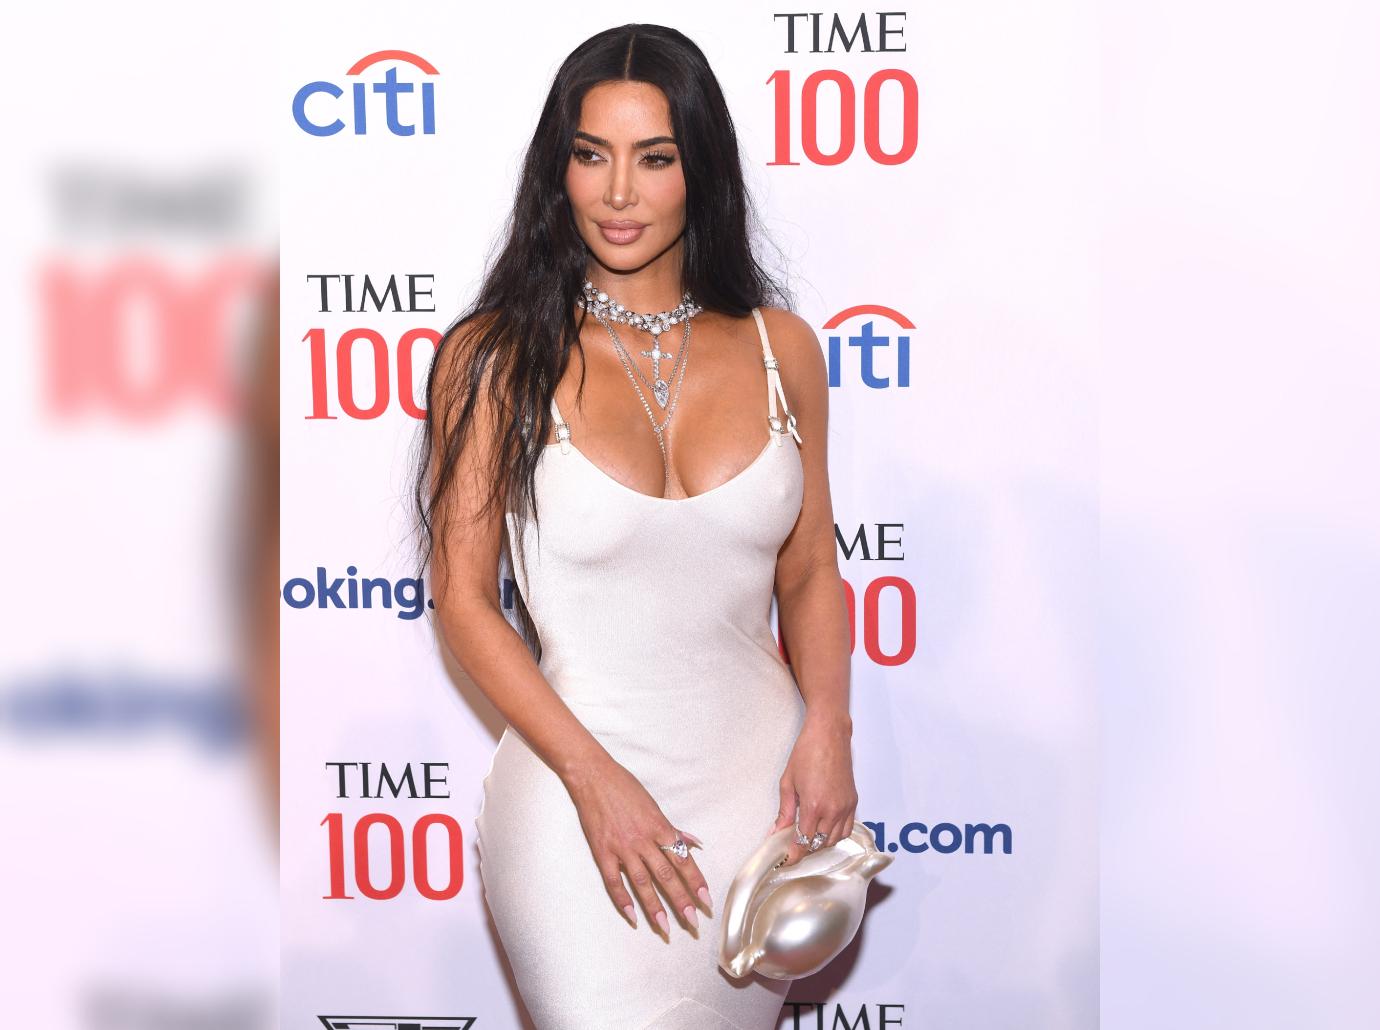 Kim Kardashian Looks Stunning At Time100 Red Carpet Gala: Photos